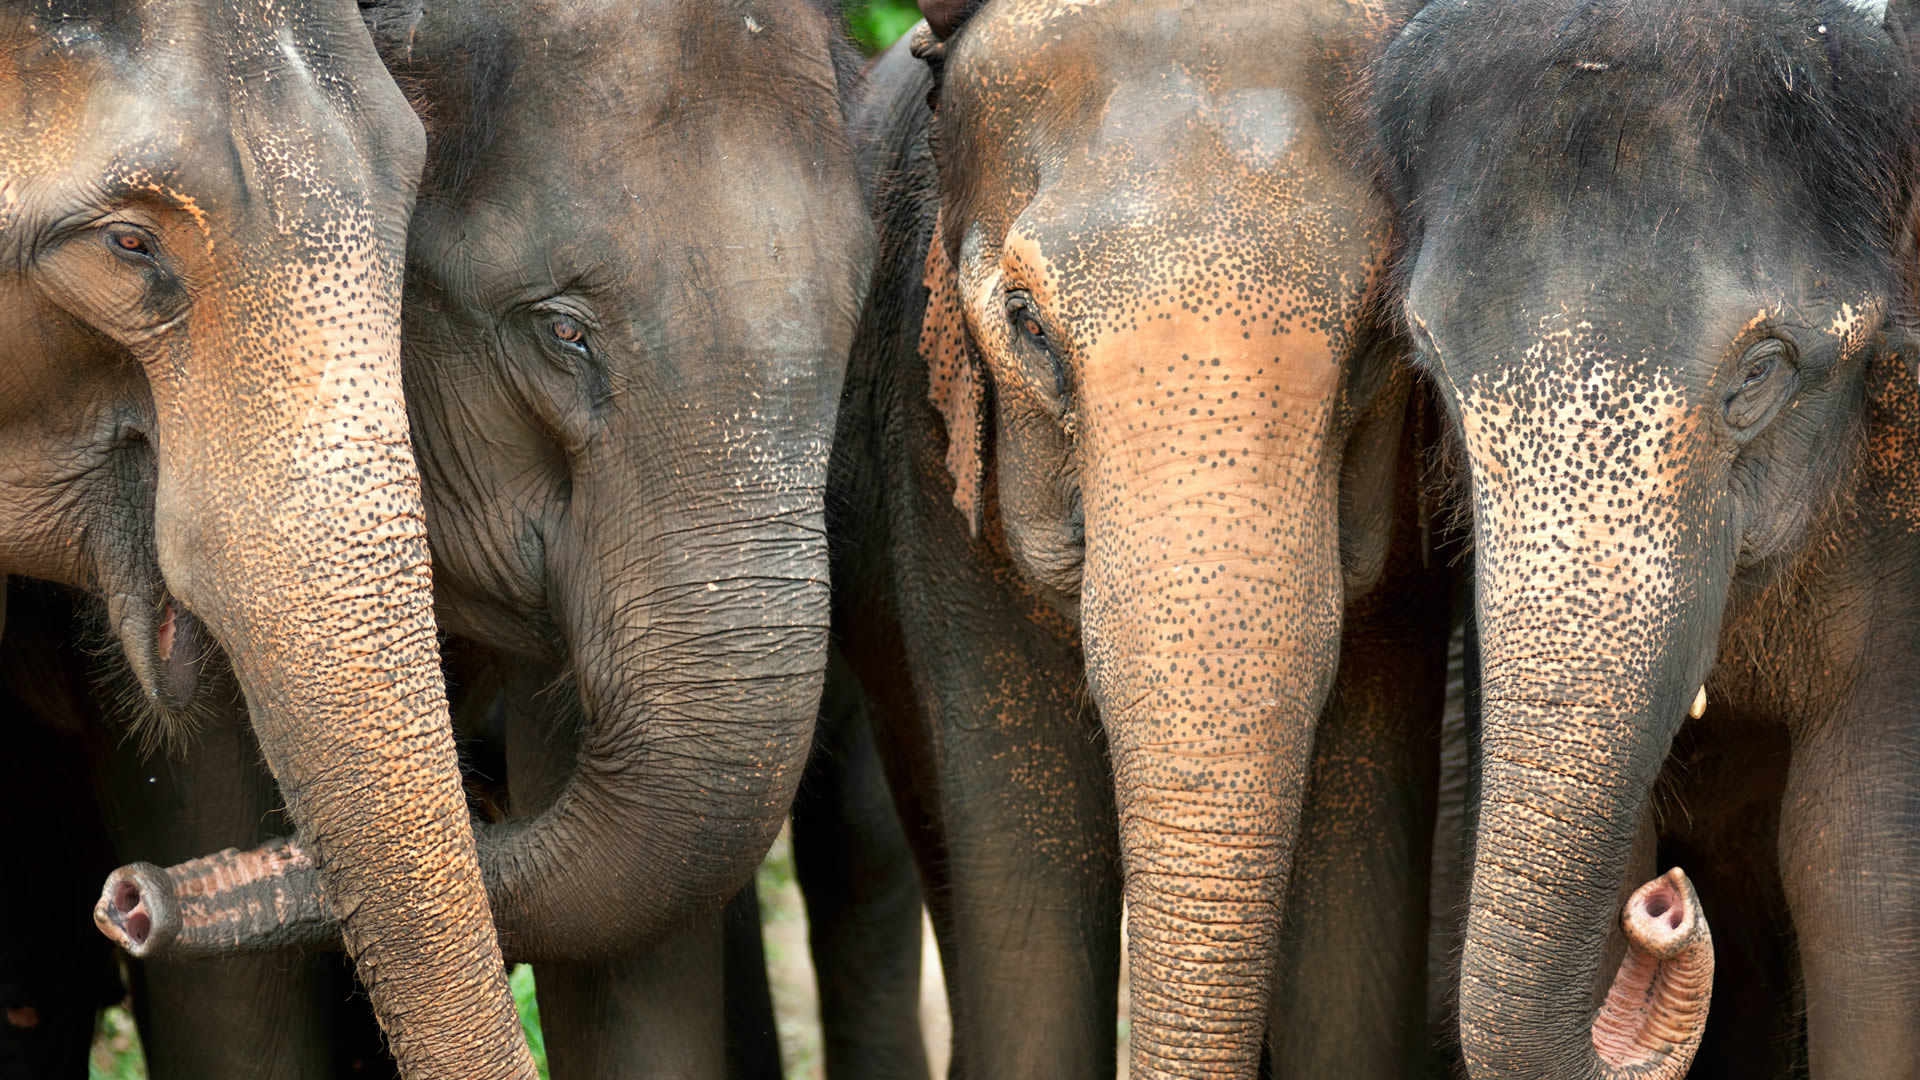 Elephant Sanctuary Thailand: Tham gia chương trình du lịch Túi Xách Lưu Động tới khu bảo tồn voi Thái Lan của chúng tôi và khám phá văn hóa, con người và động vật hoang dã độc đáo của đất nước này. Bạn sẽ có cơ hội trò chuyện với những chuyên gia, tình nguyện viên và những người dân thân thiện, nghe những câu chuyện thú vị và đáng nhớ!